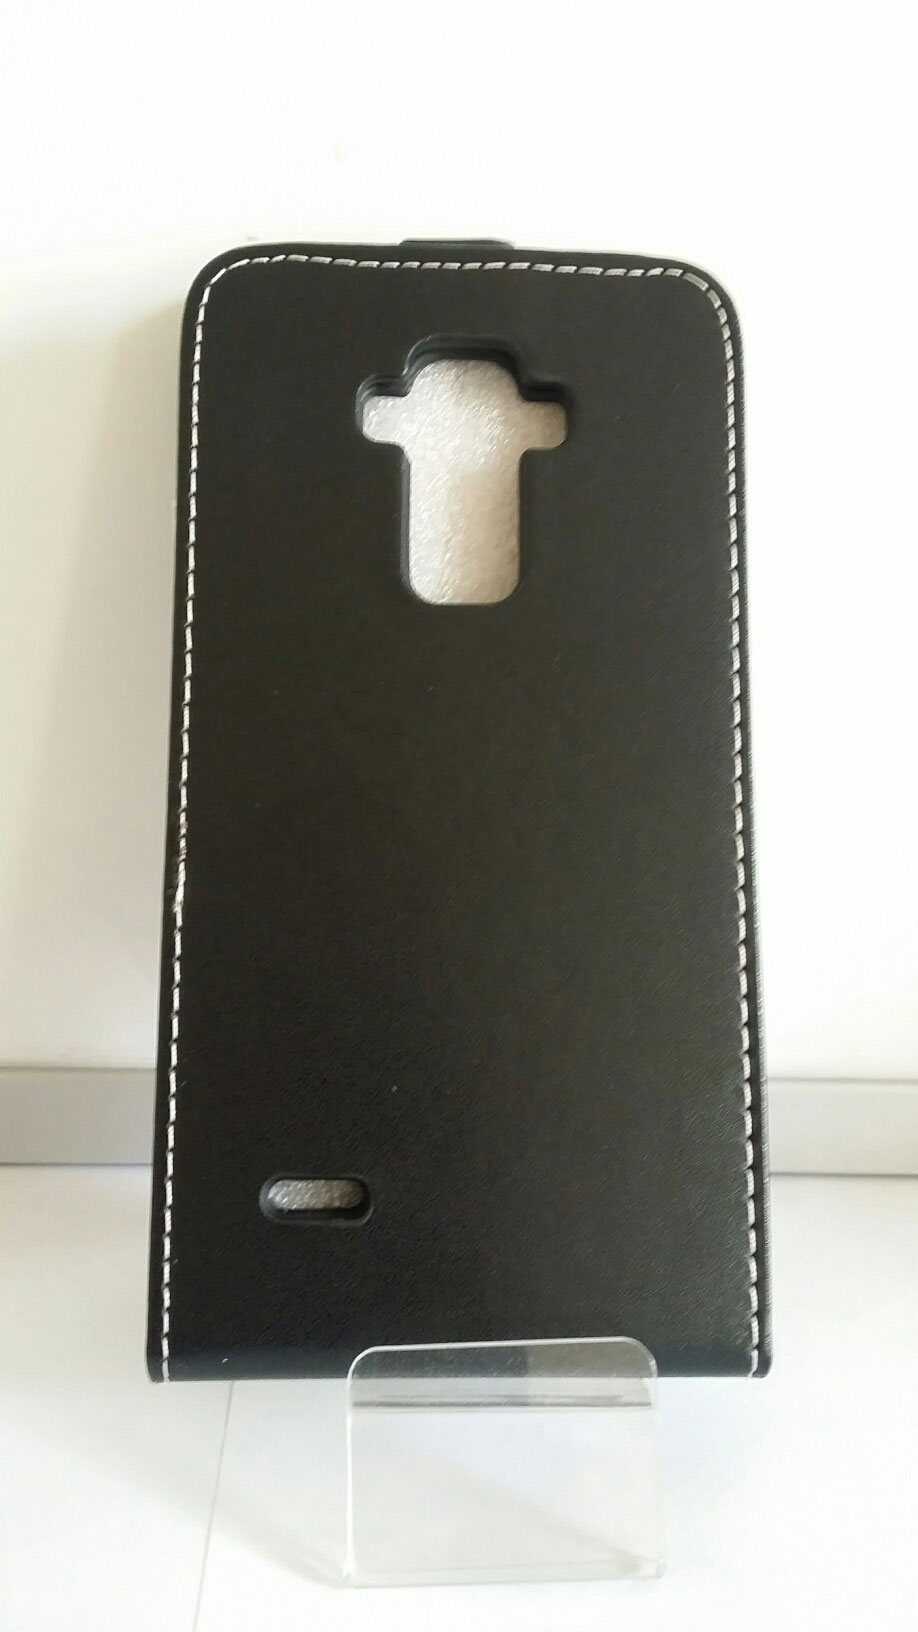 Flipové pouzdro Forcell pro mobil LG G4 STYLUS (H635) černý odstín